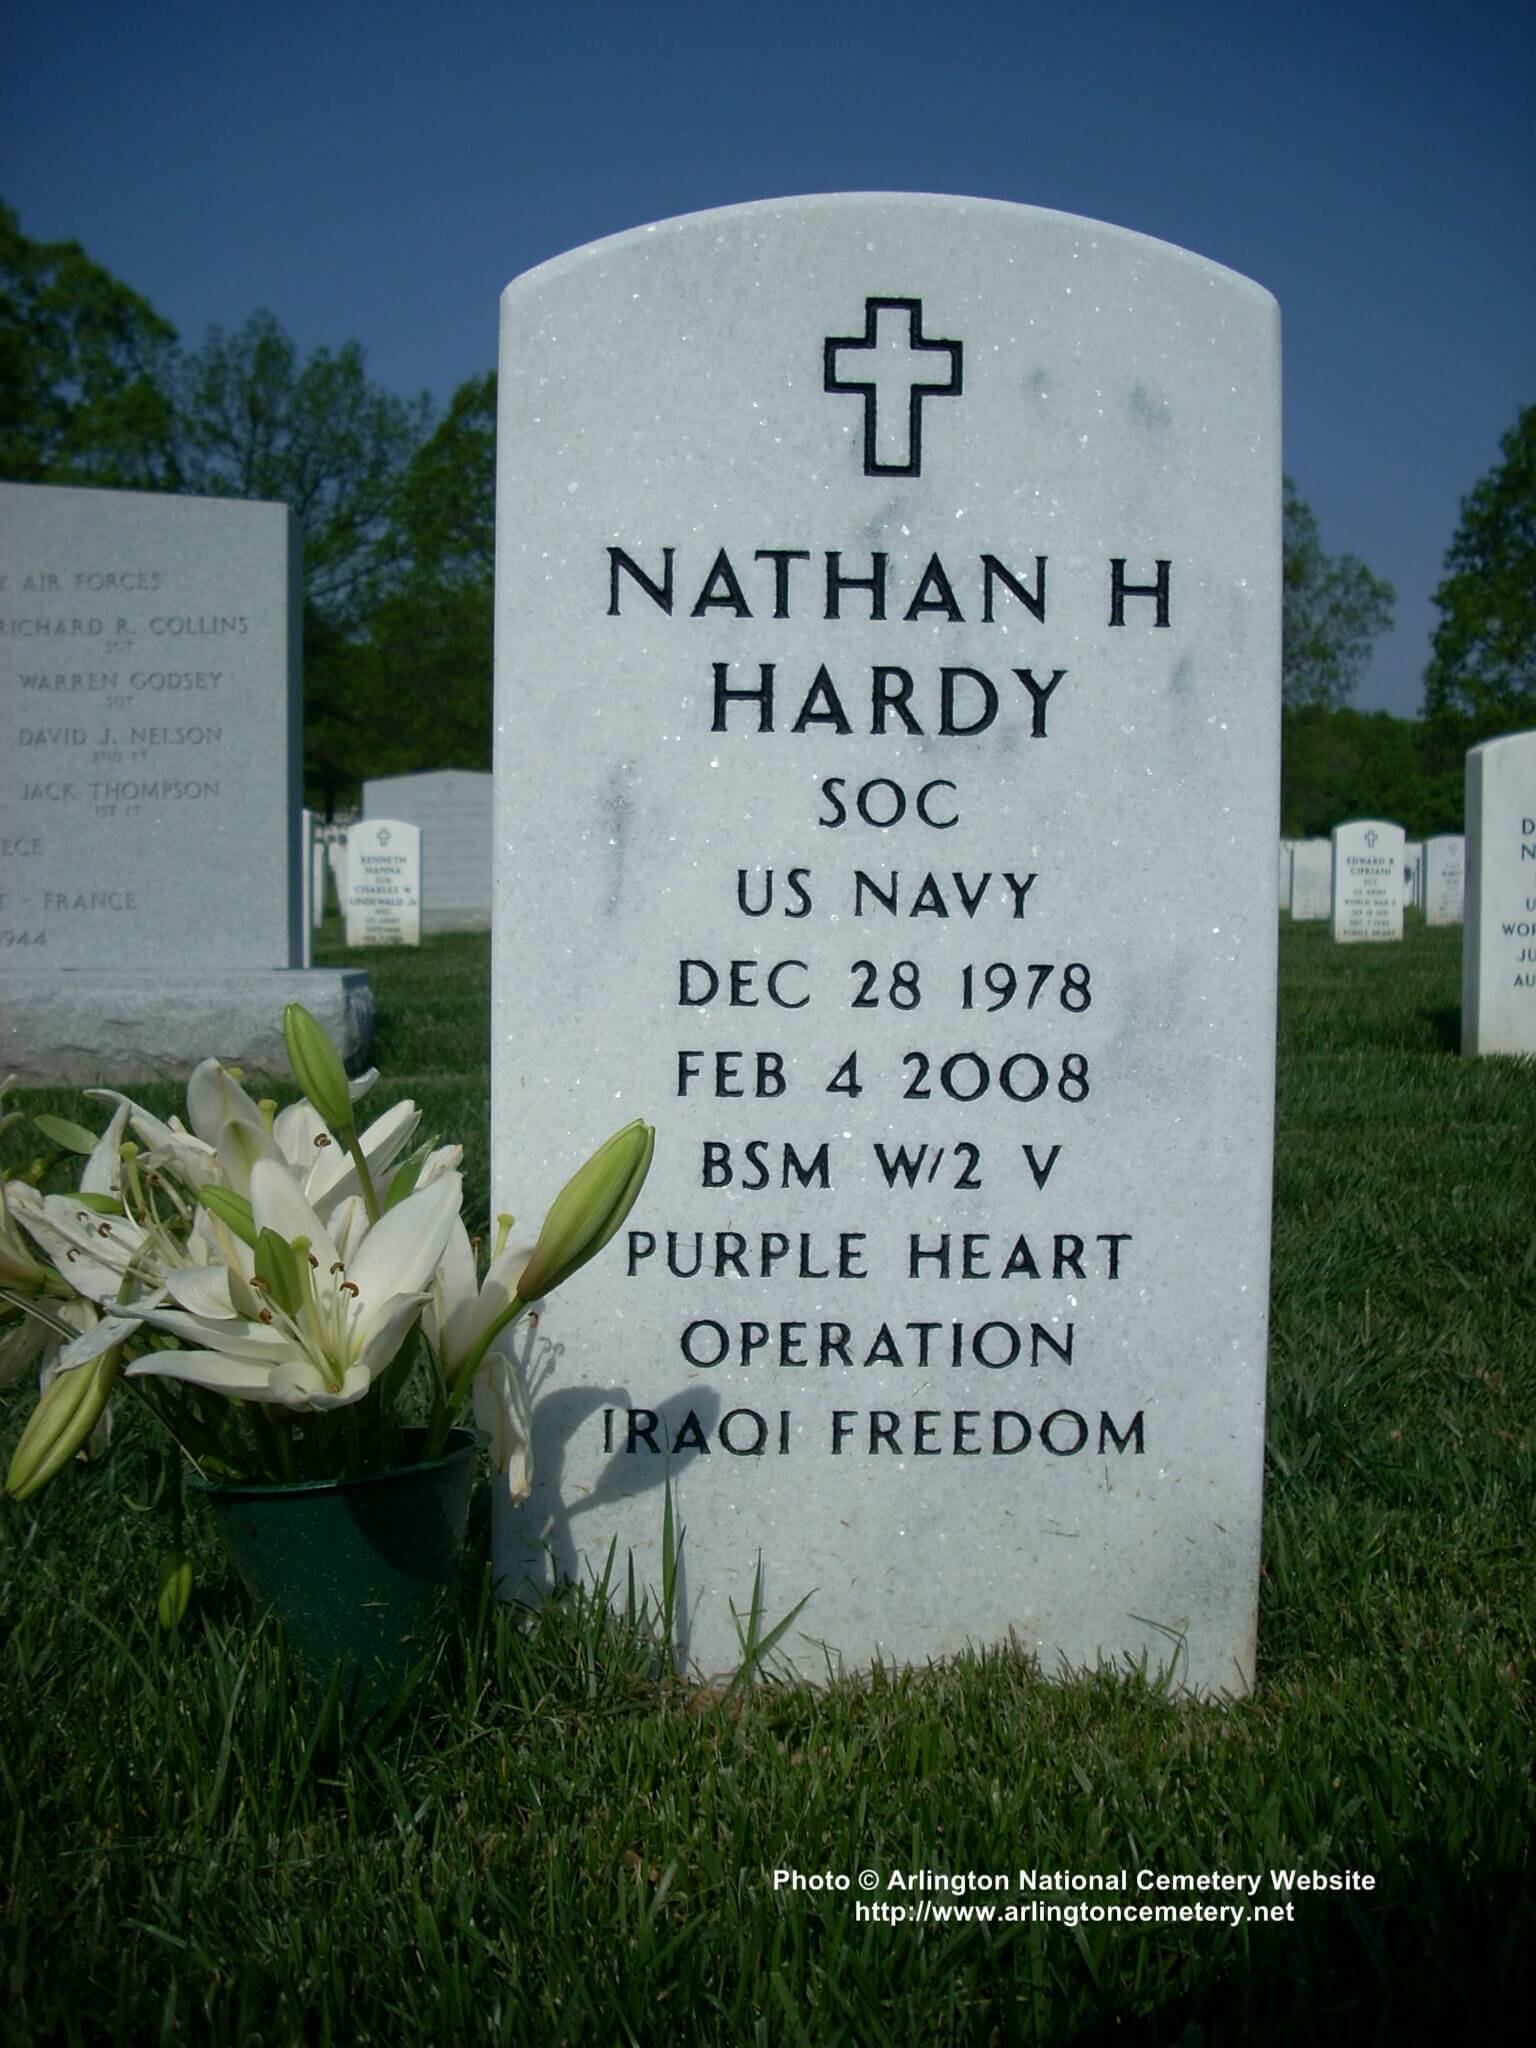 nhhardy-gravesite-photo-may-2008-001